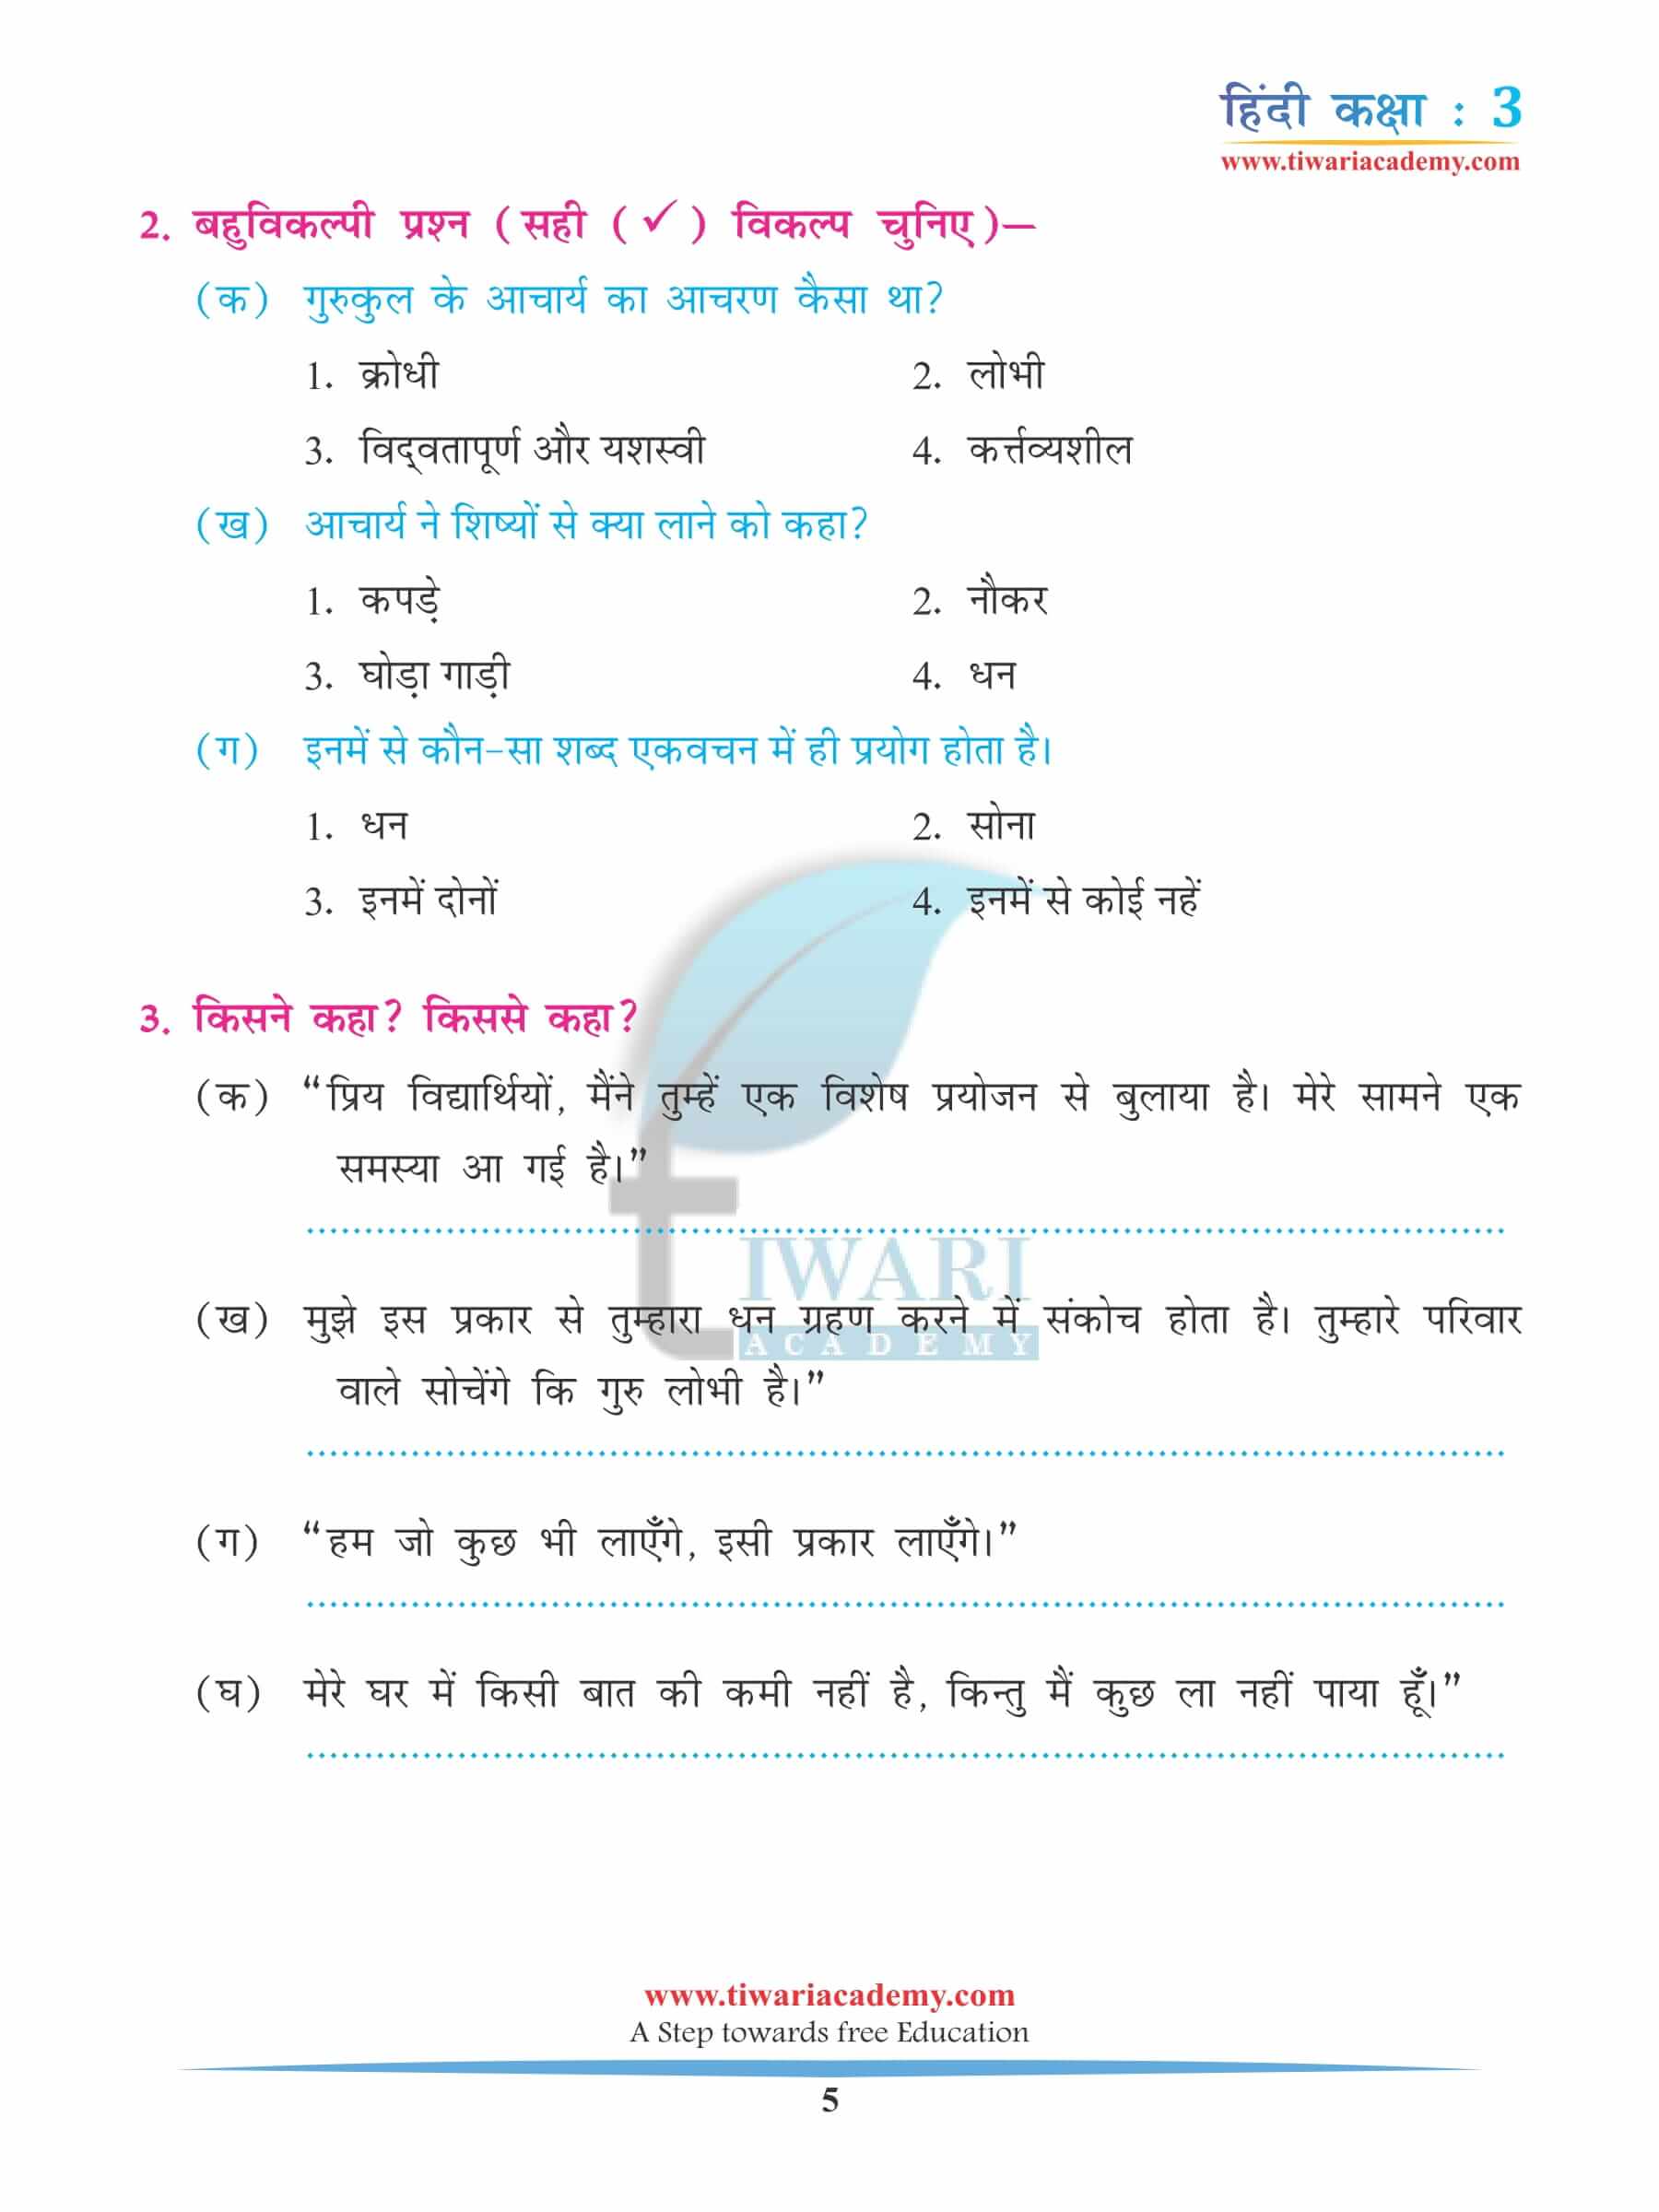 कक्षा 3 हिंदी अध्याय 11 अभ्यास के लिए पुस्तक